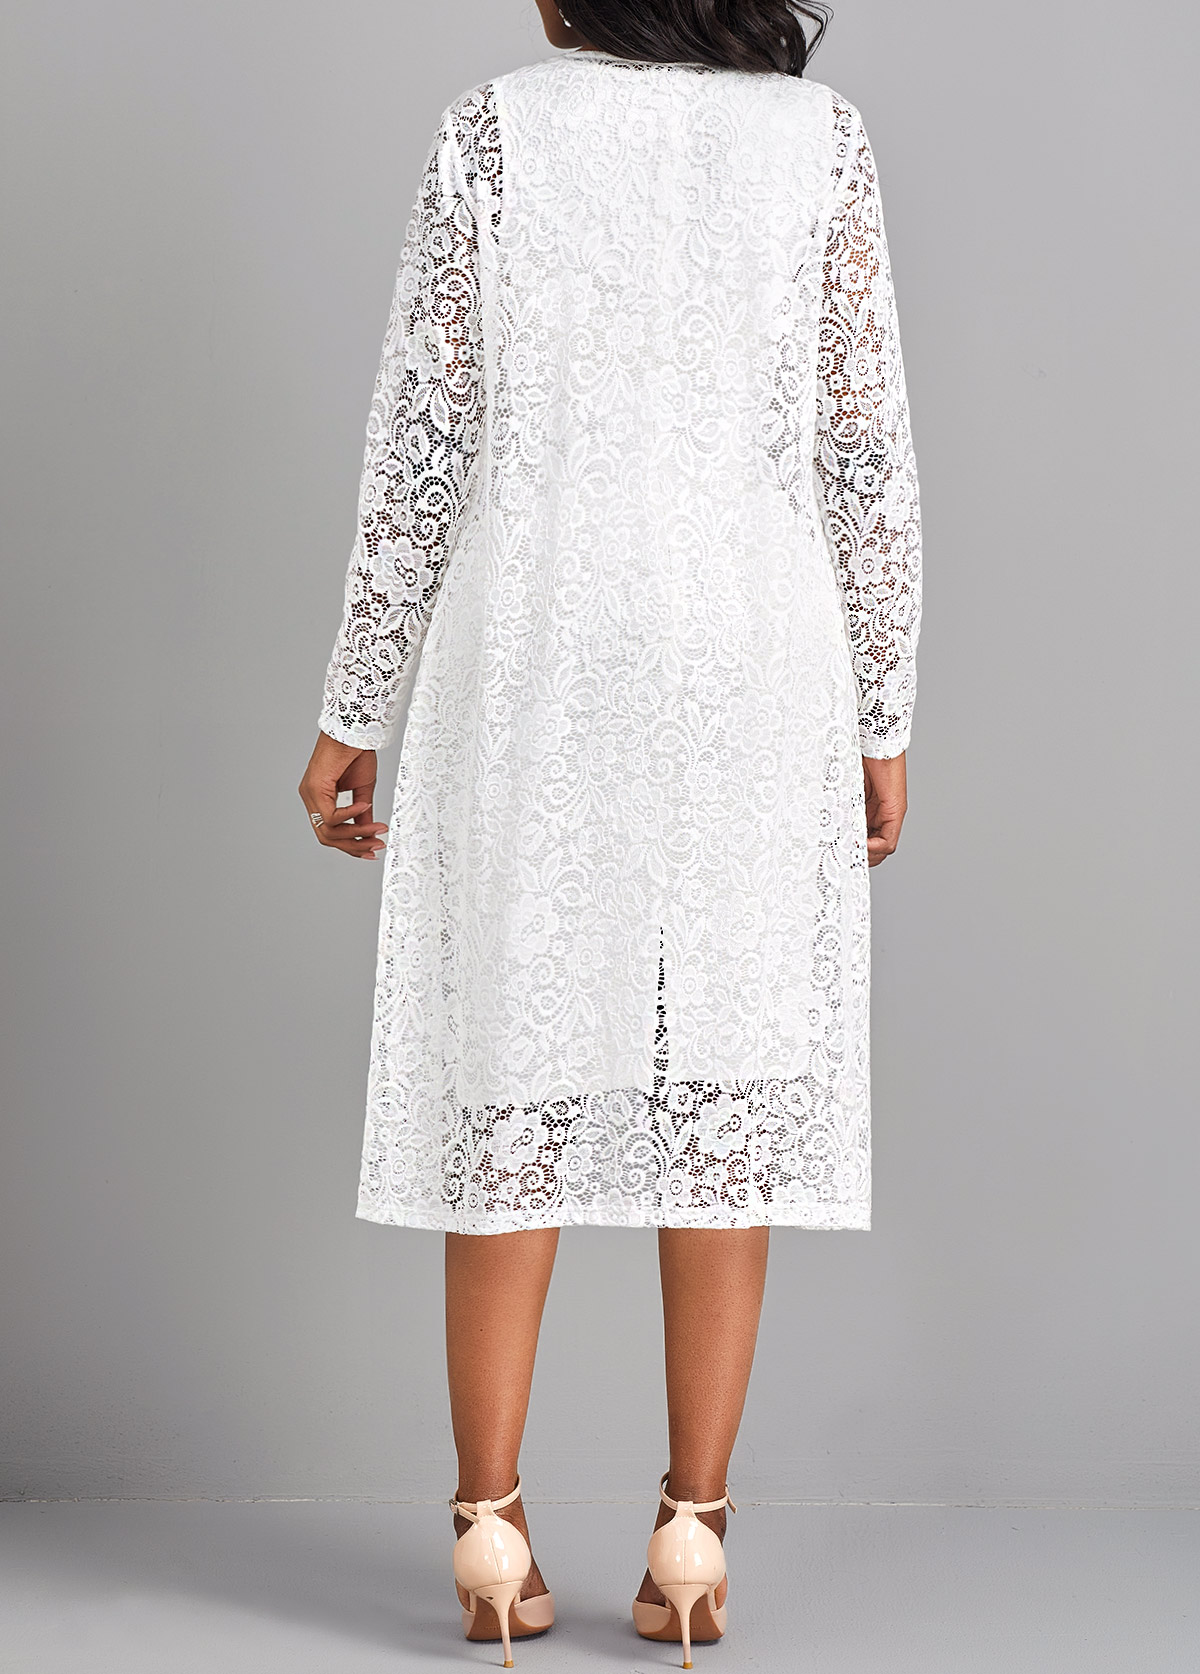 Lace Two Piece Suit Square Neck White Dress